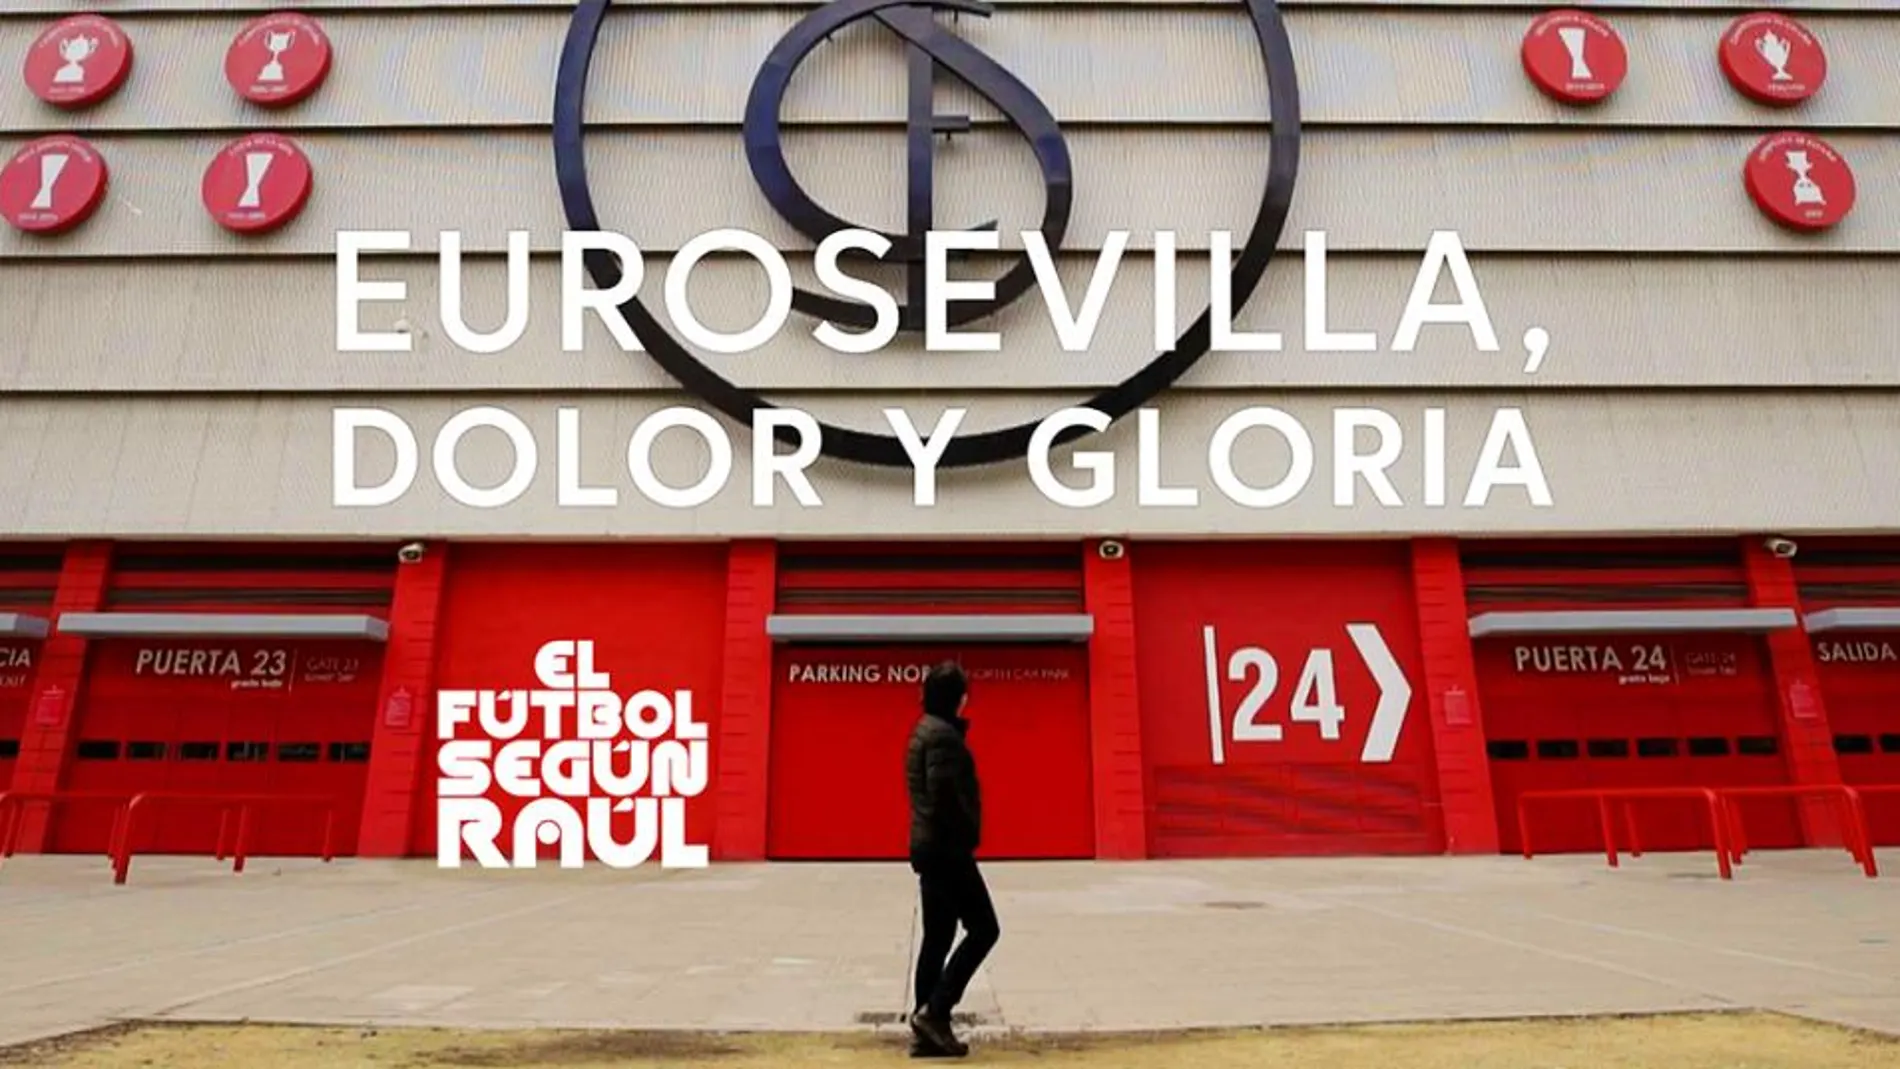 Eurosevilla, dolor y gloria: el fútbol según Raúl